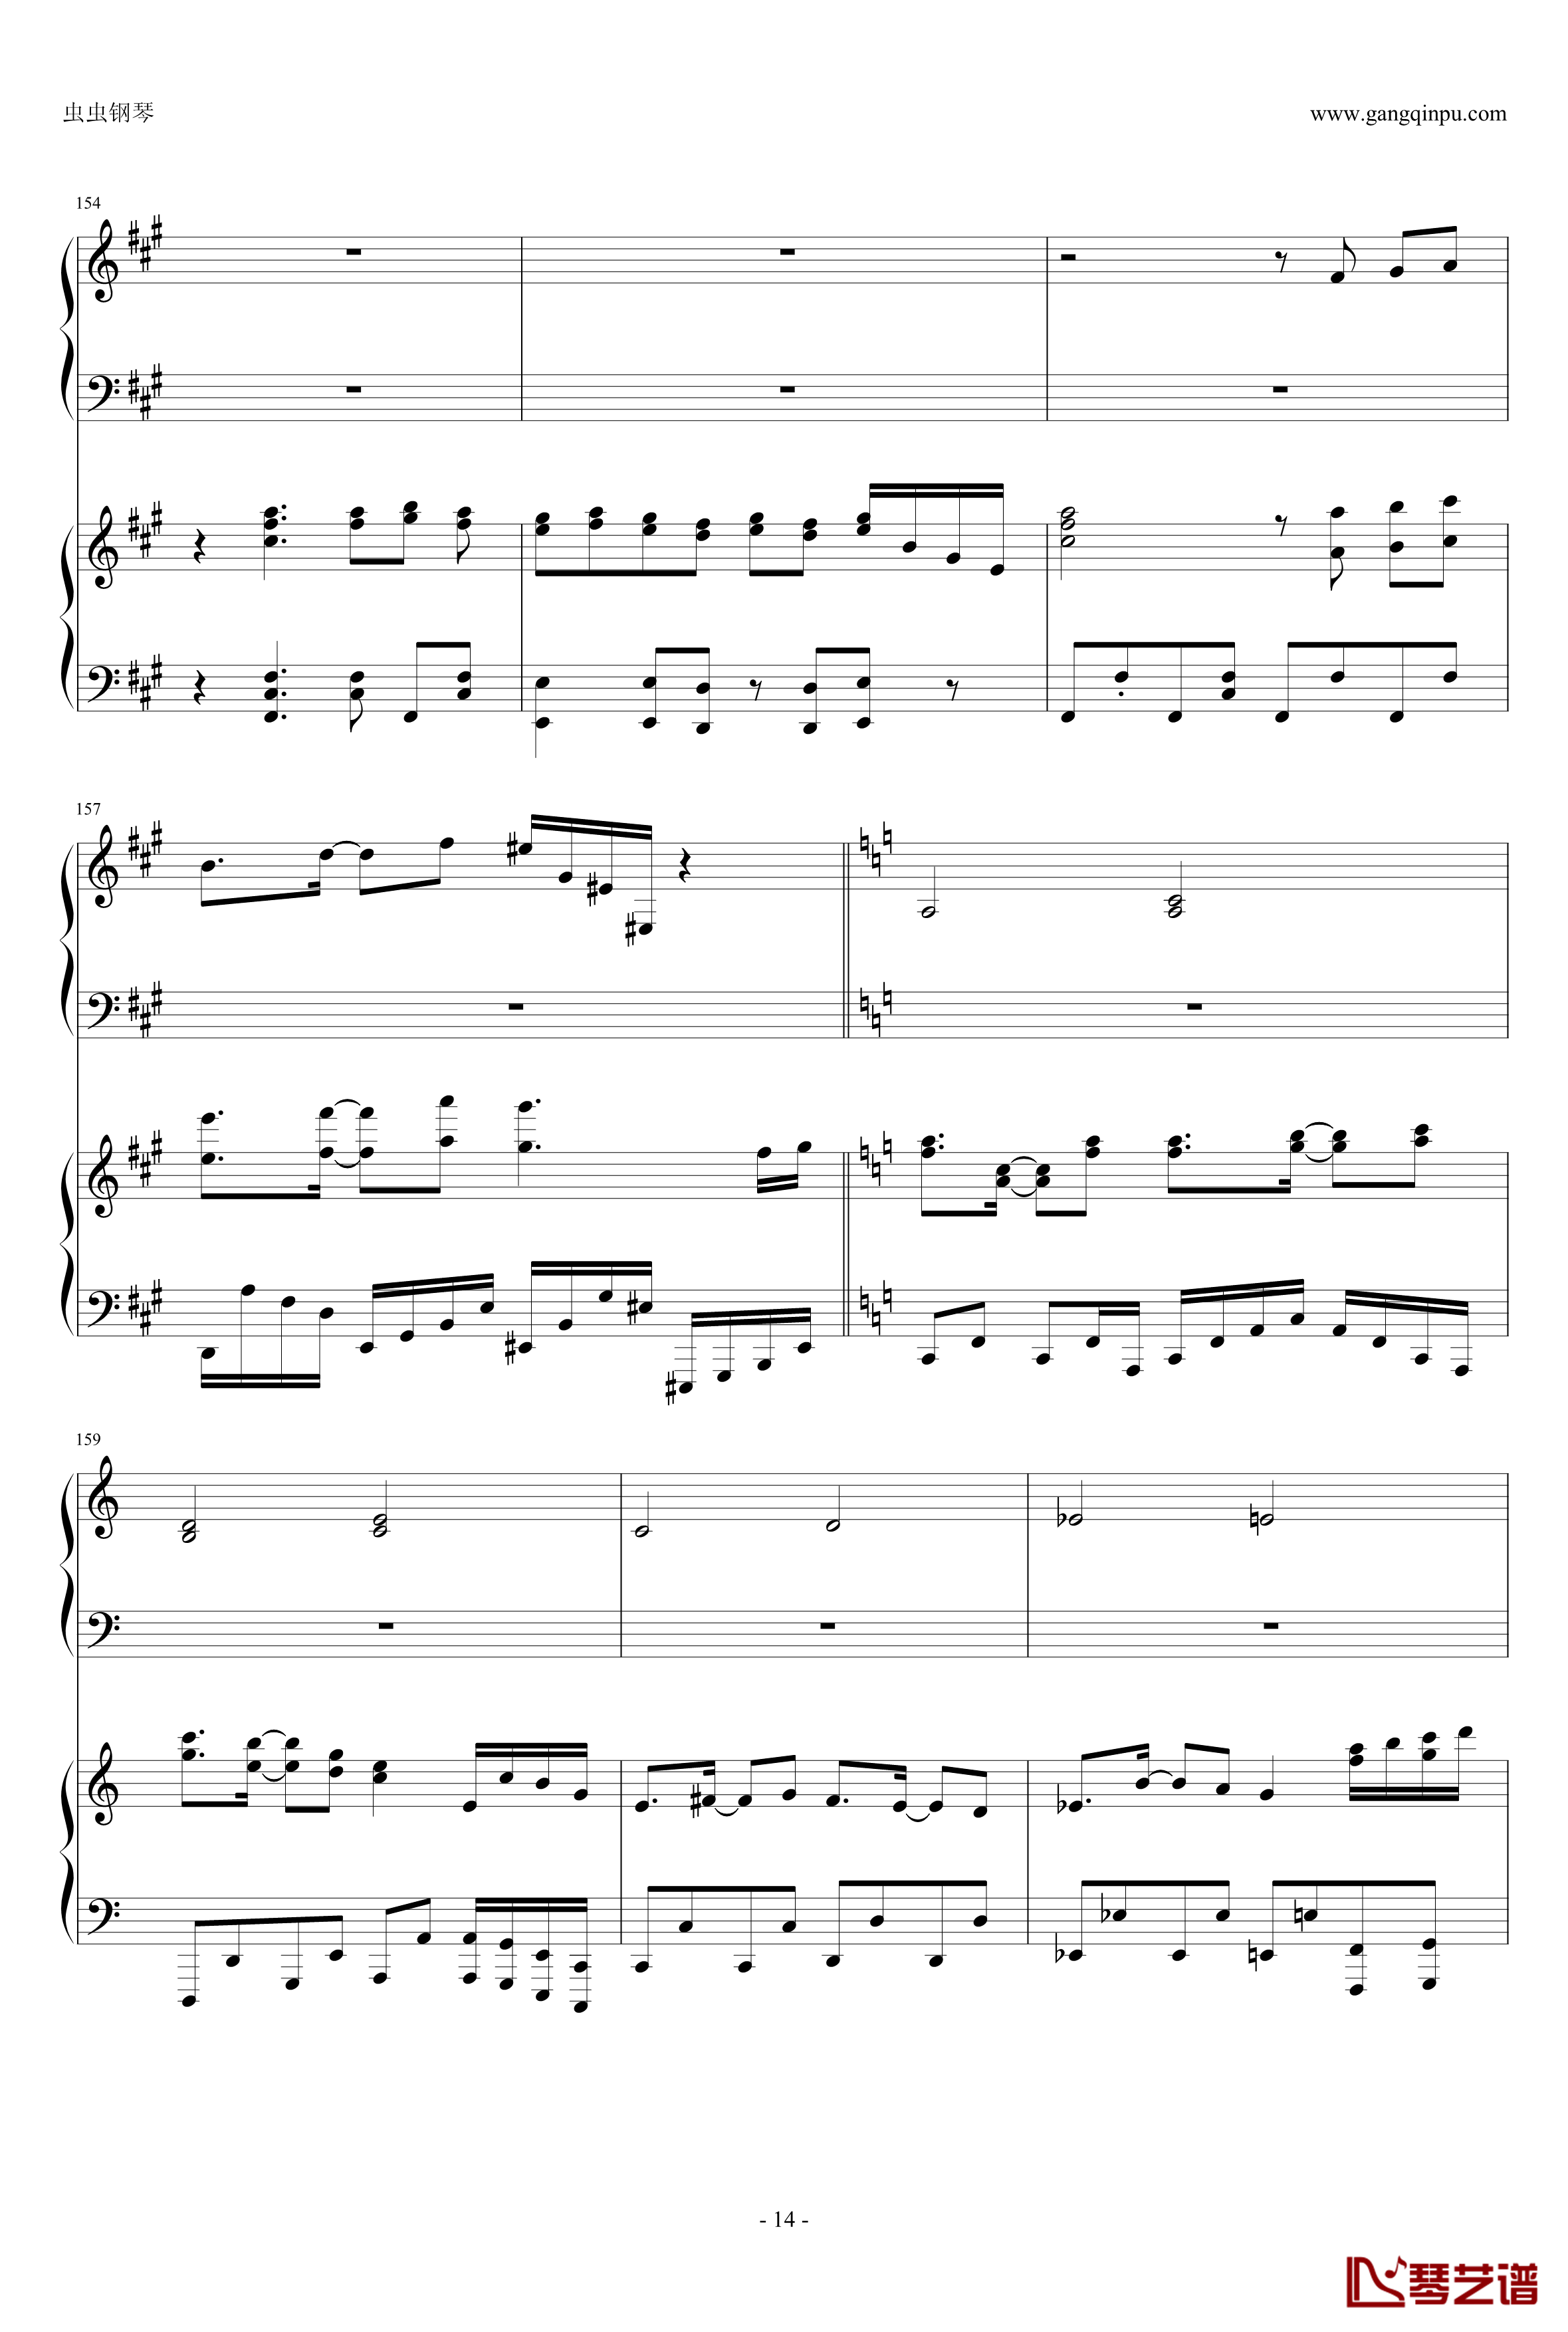 東方連奏曲II Pianoforte钢琴谱-第一部分-东方project14